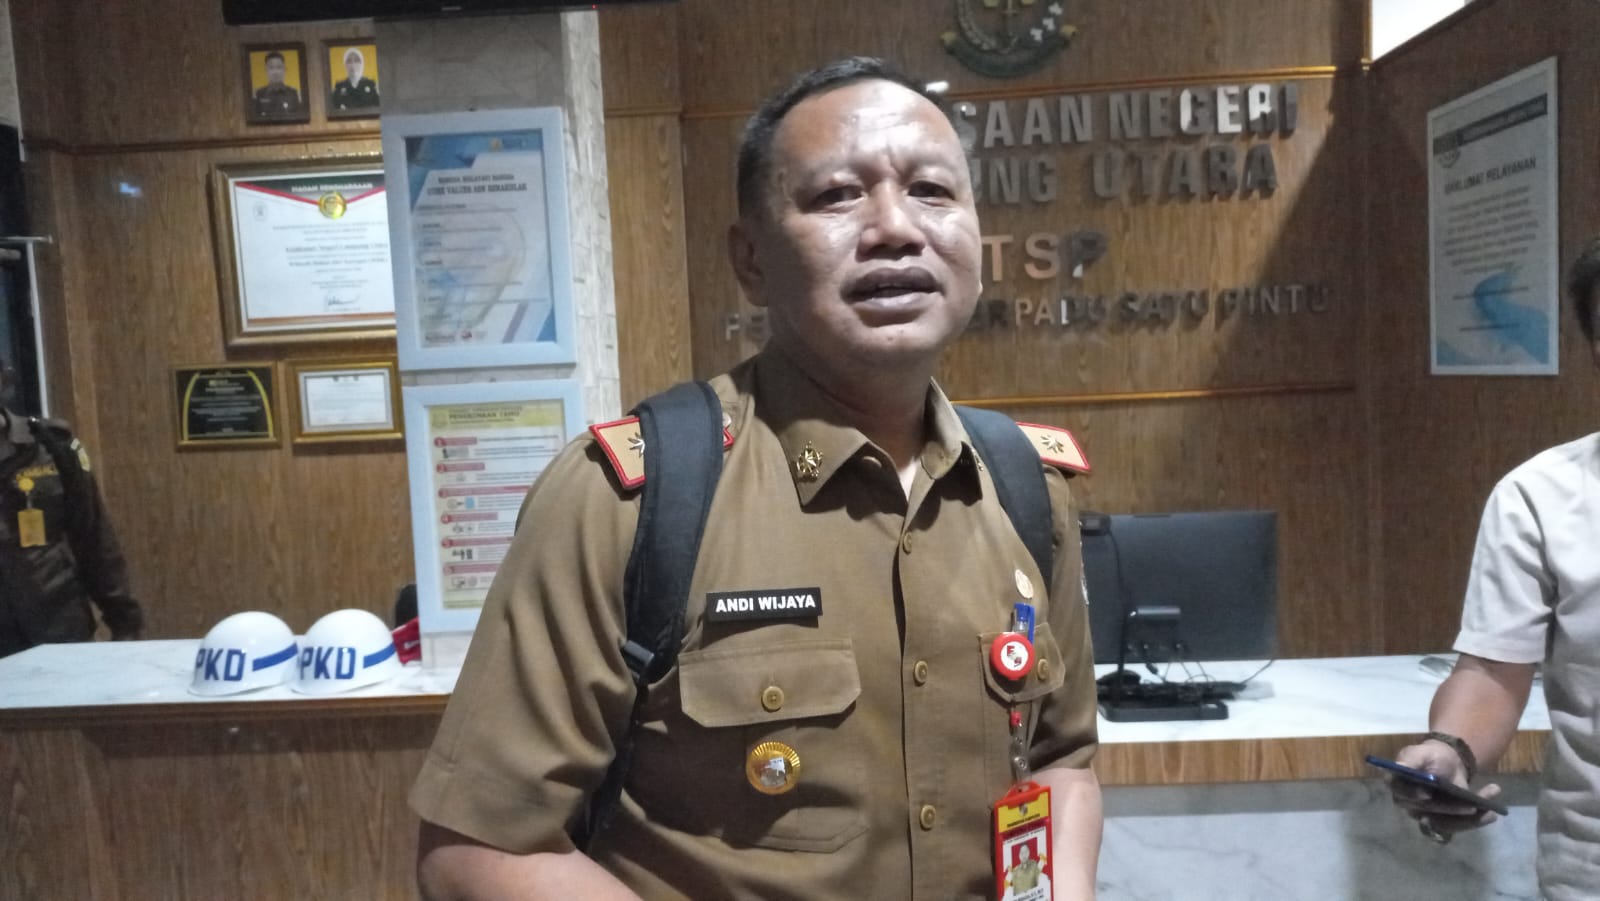 Kepala Bappeda Lampung Utara Diperiksa Hingga 9 Jam